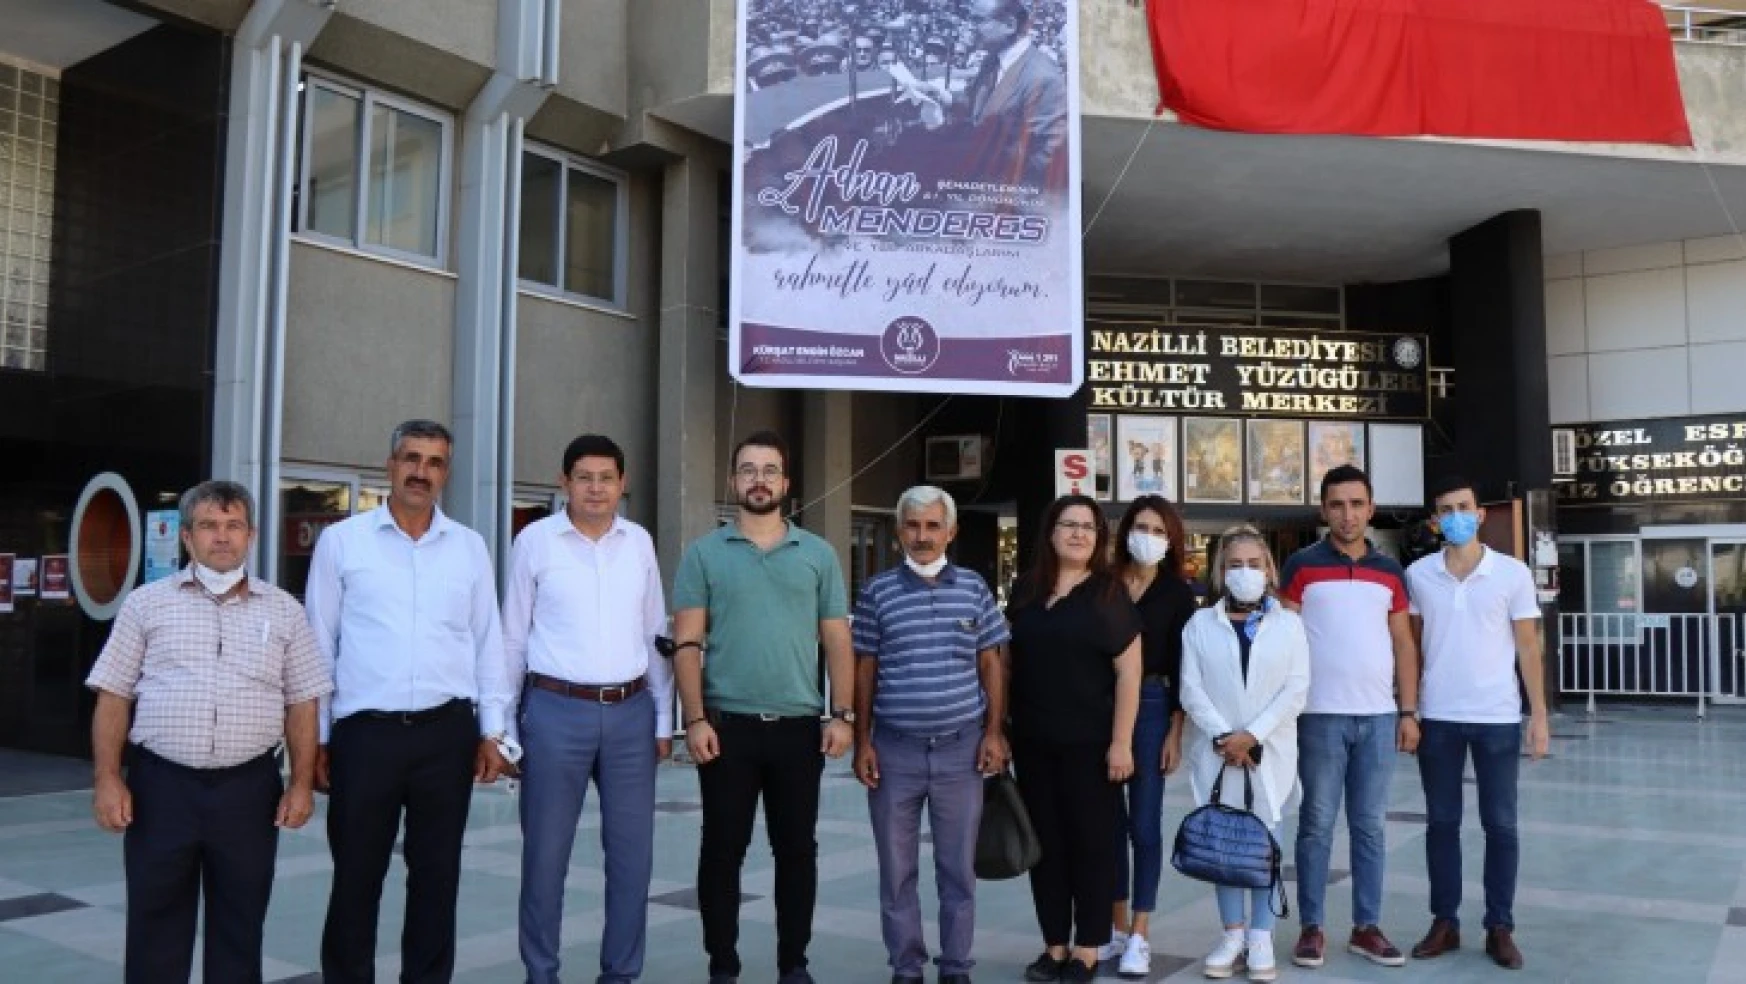 Nazilli Belediyesi, merhum Başbakan Menderes'i andı